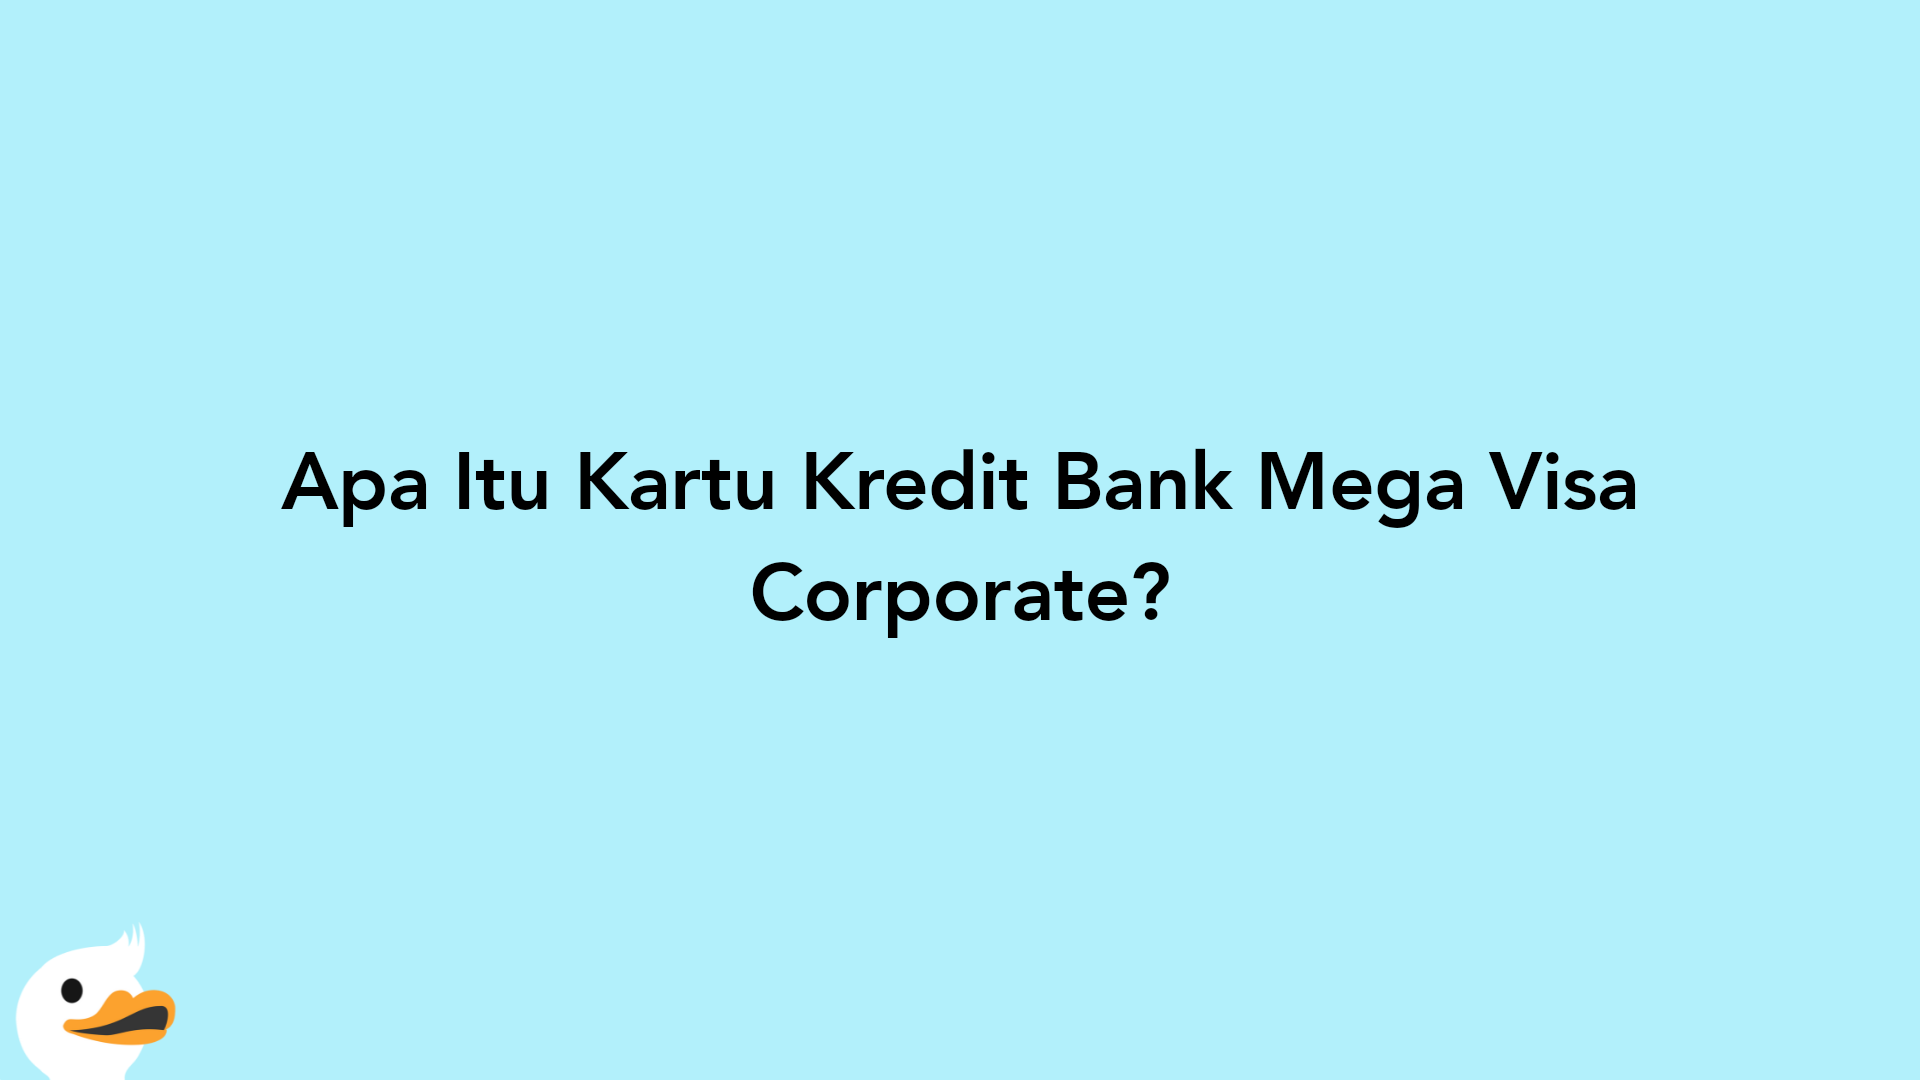 Apa Itu Kartu Kredit Bank Mega Visa Corporate?